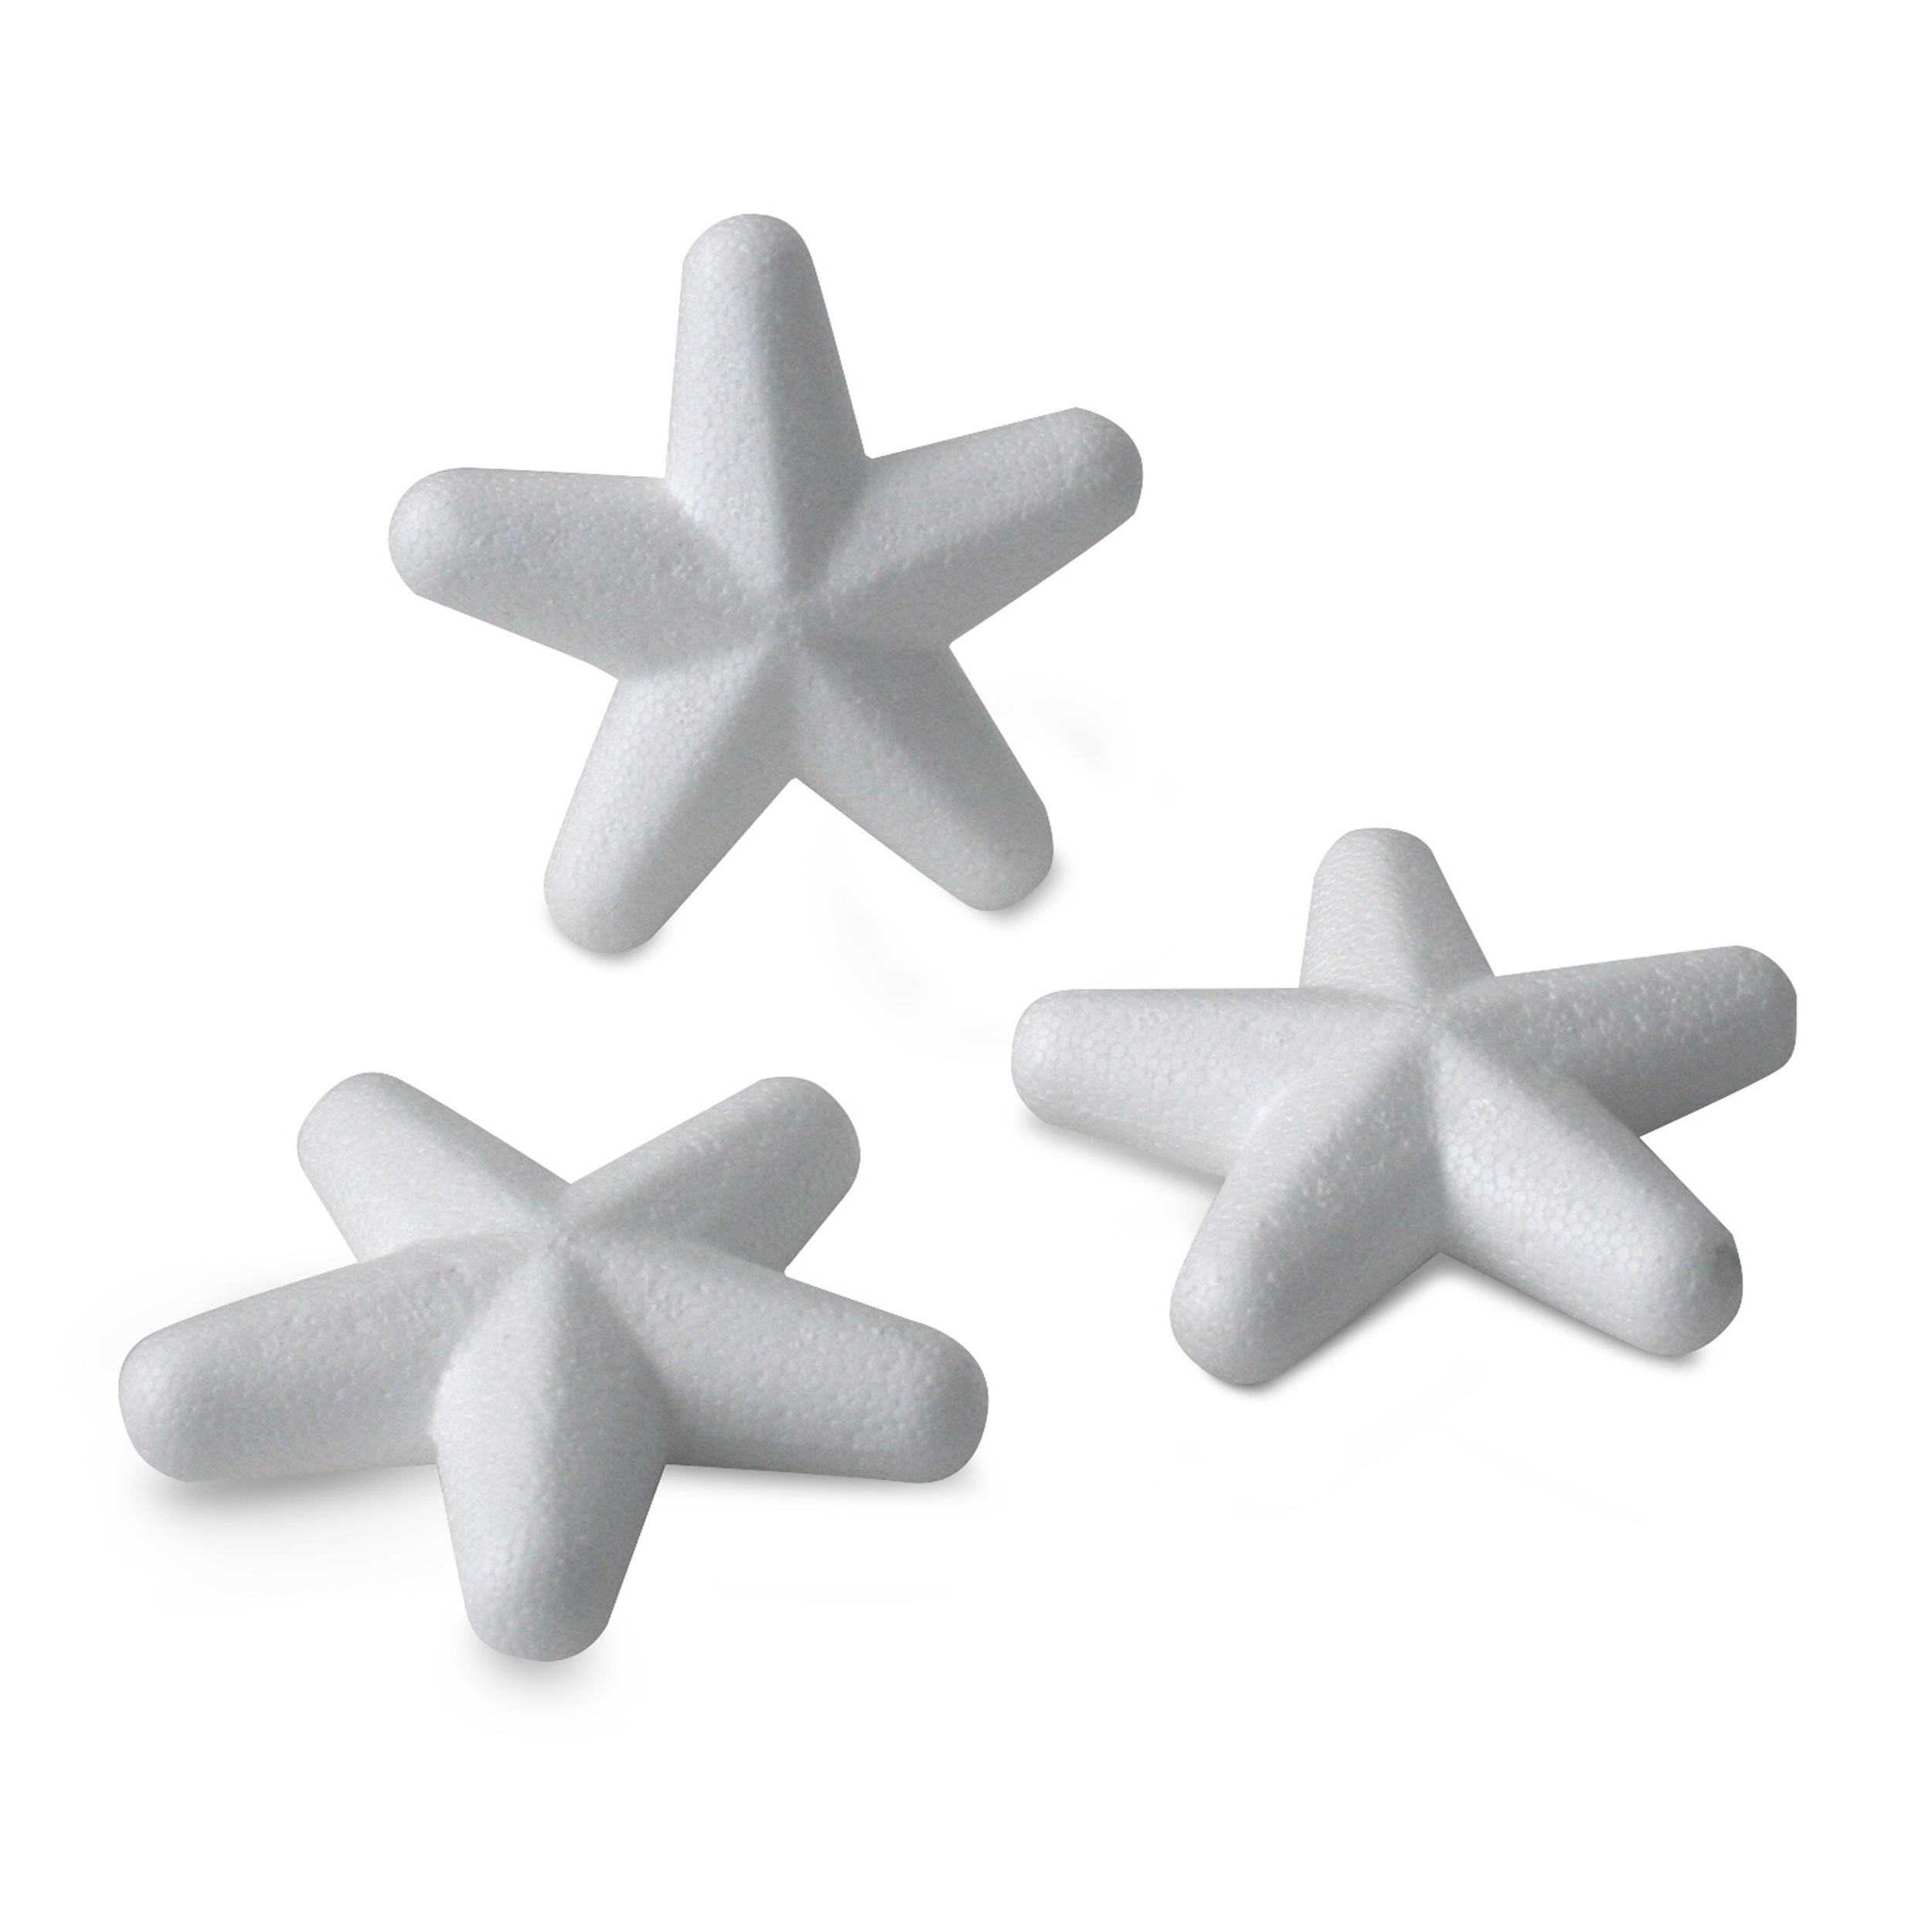 Decosa Styroporstern, weiß, Ø 10 cm, Set besteht aus 3 Sternen